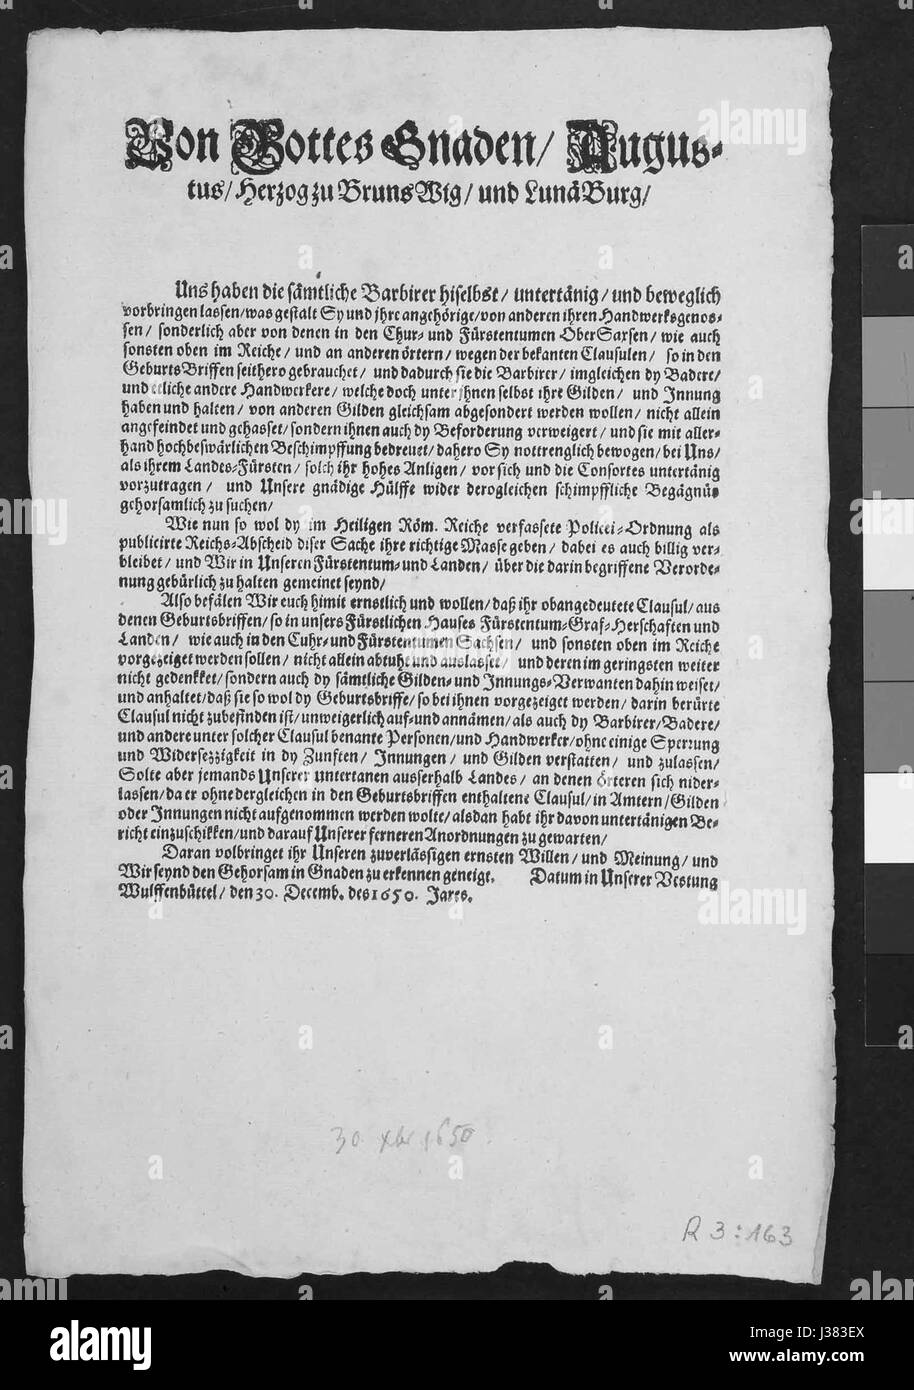 DE Verordnung ueber die Streichung von Handwerken in den Geburtsbriefen 1650 Foto Stock